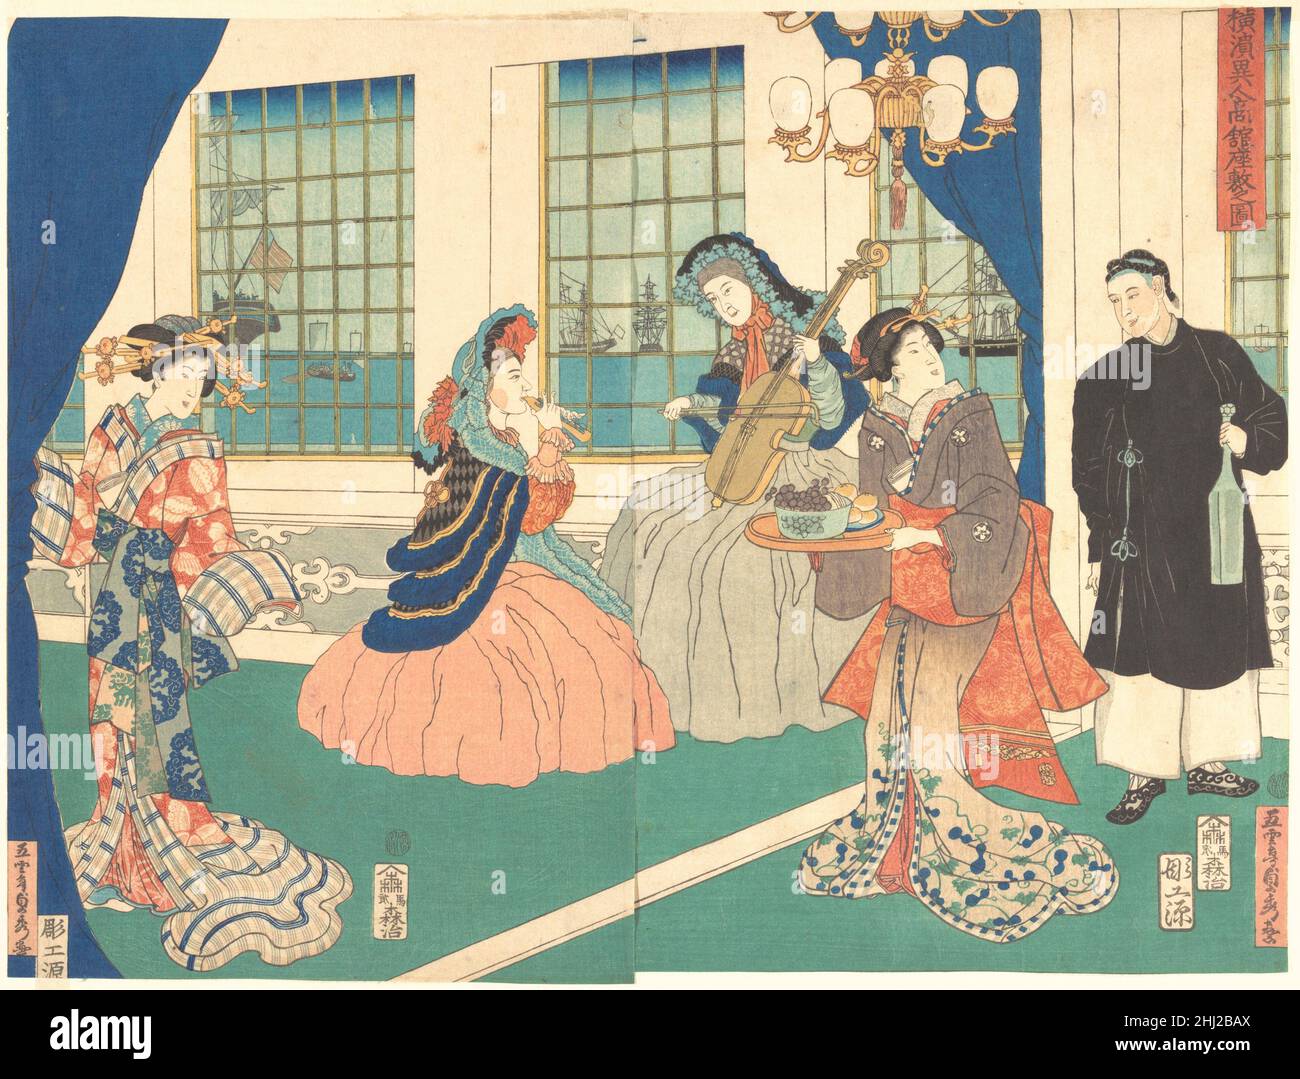 Disegno Camera di una struttura di affari esteri a Yokohama 9th mese, 1861 Utagawa (Goontei) Sadahide giapponese il cortigiano sulla sinistra, indossando uno spettacolare kimono con farfalle e strisce, osserva due donne occidentali che giocano viola e flauto al centro della stanza. Una serva cinese e una donna giapponese servono vino, uva e dolci. Sullo sfondo, le navi possono essere viste attraverso le finestre in stile occidentale, indicando che il soiree si svolge nella nuova città portuale di Yokohama. Salotto di una sede di affari esteri a Yokohama 55128 Foto Stock